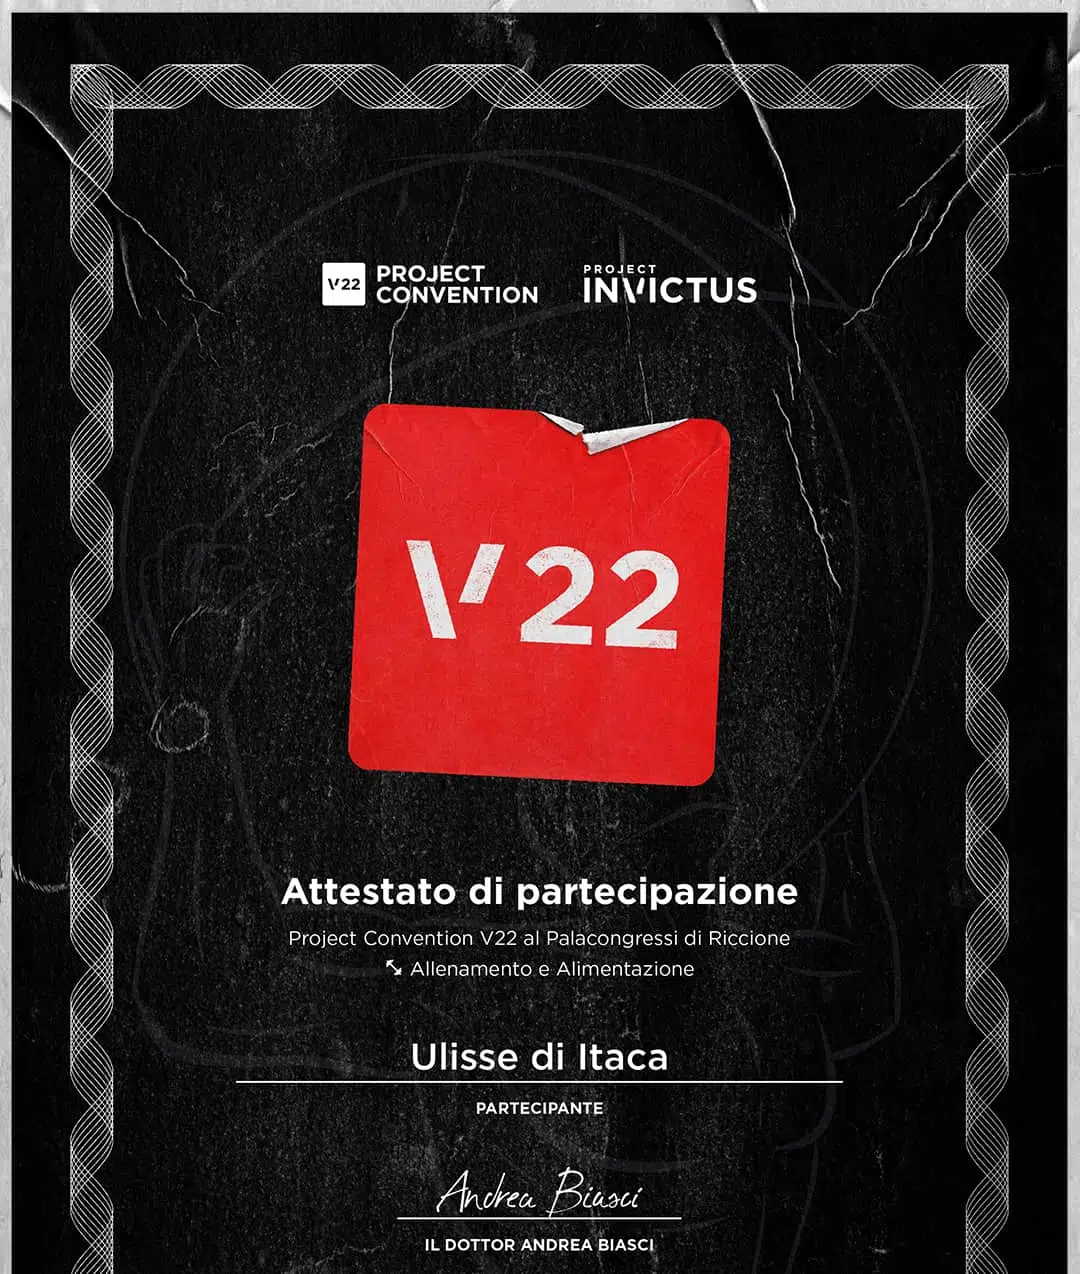 Project Convention V22 Attestato